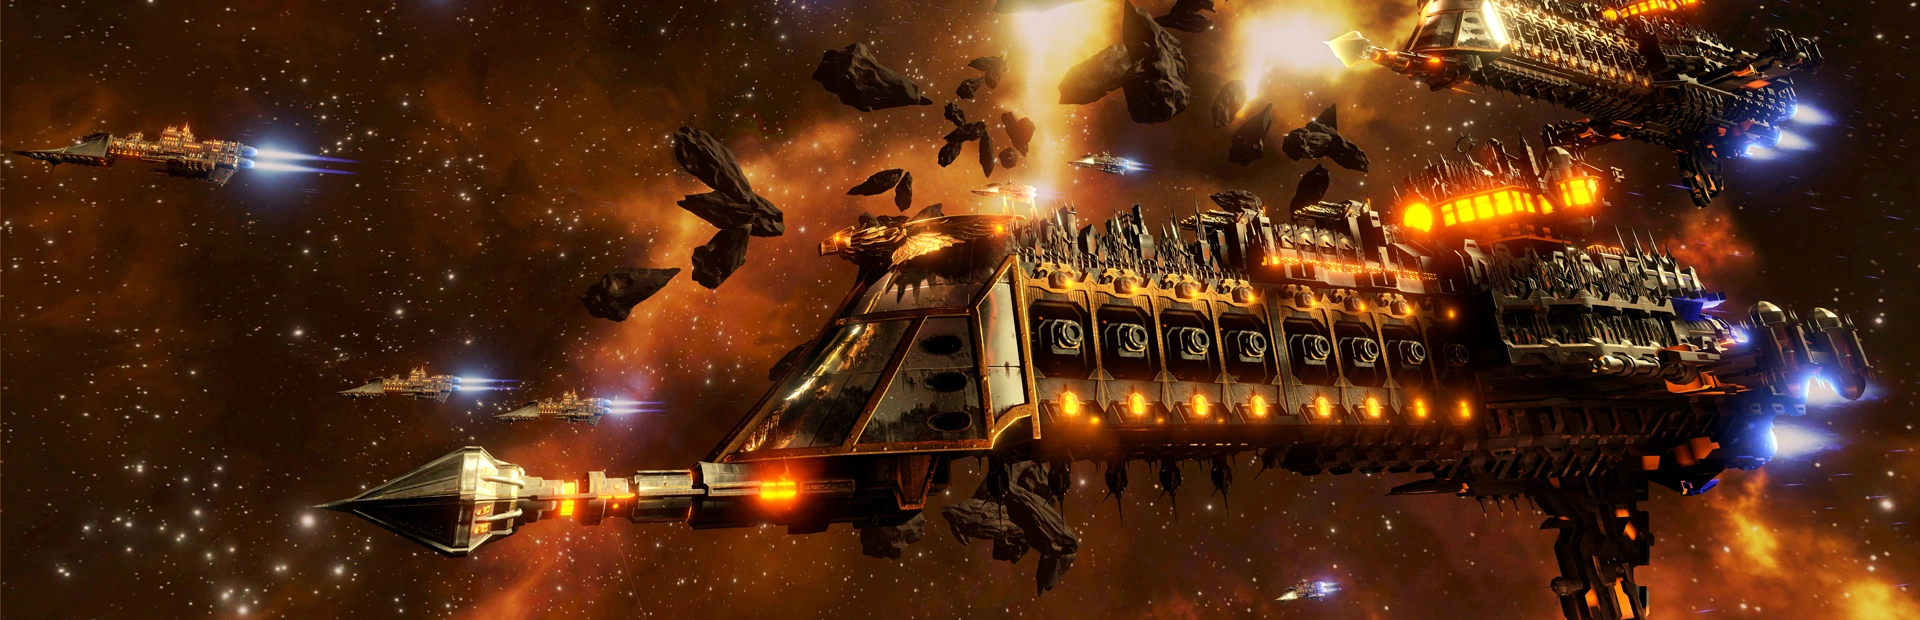 دانلود بازی Battlefleet Gothic: Armada 2 برای PC | گیمباتو